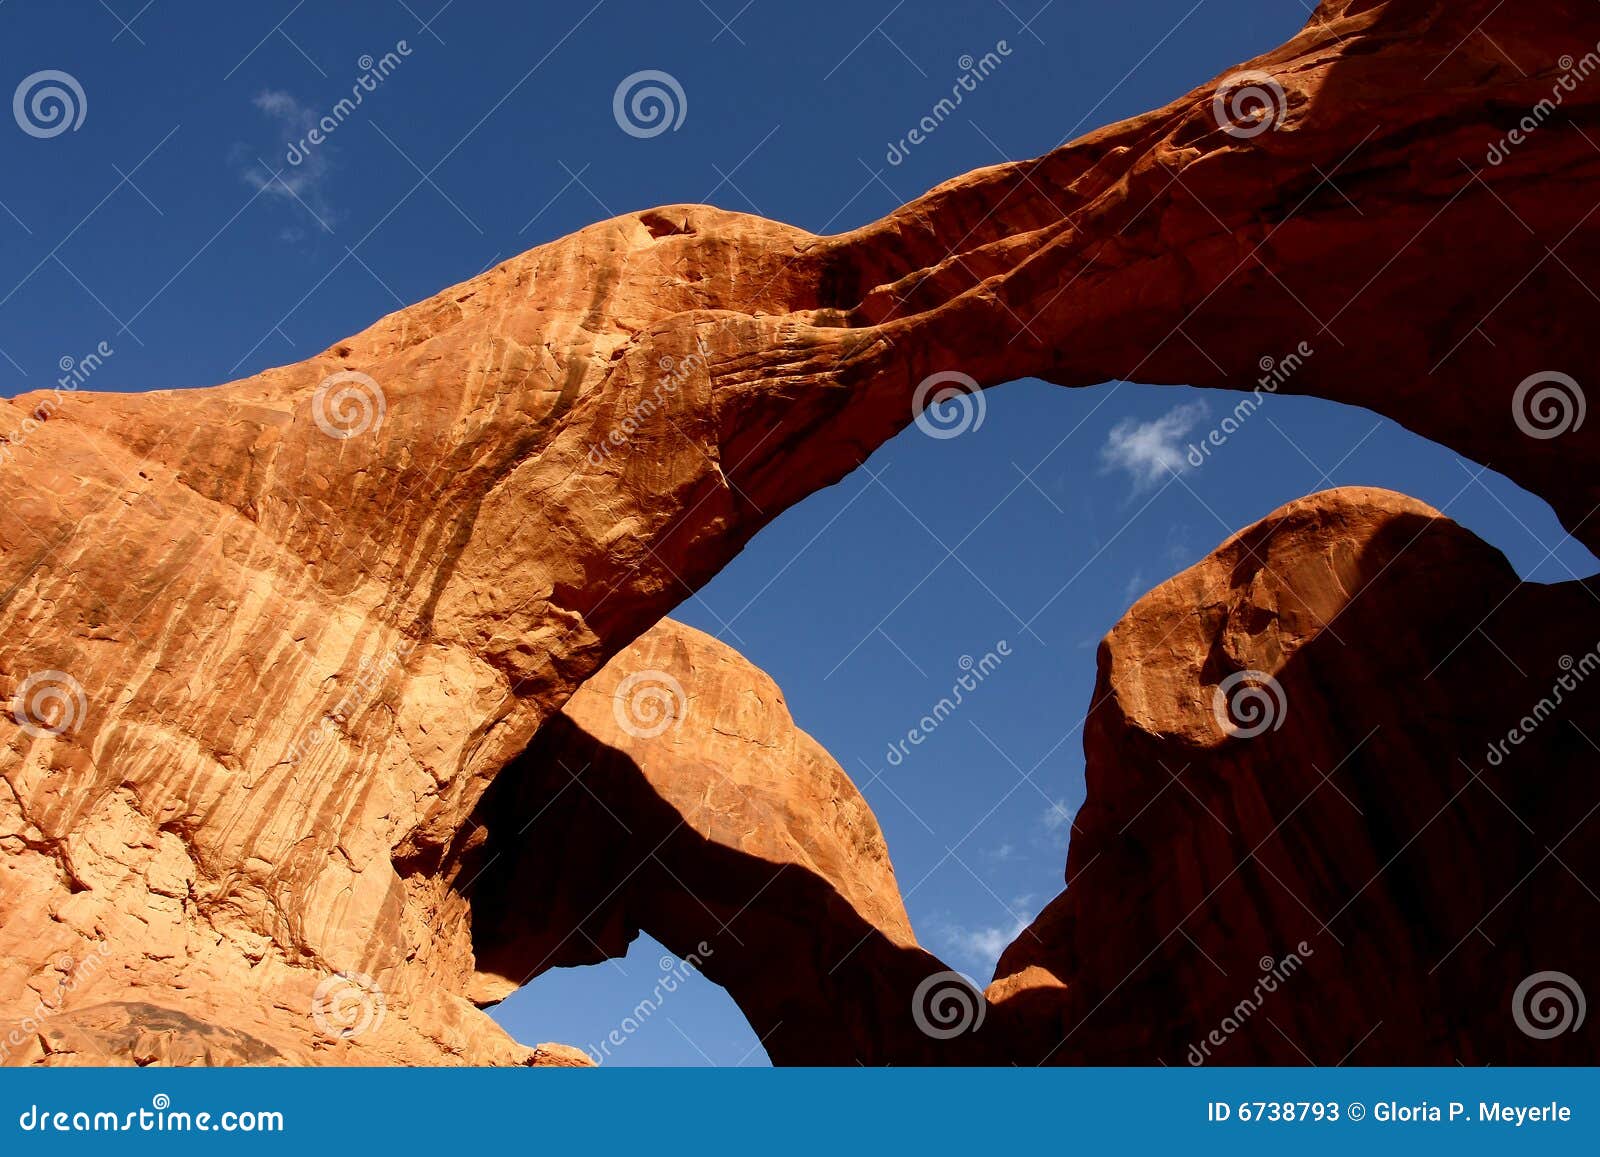 Doppio arco. Doppi archi naturali rossi nel sud-ovest del deserto